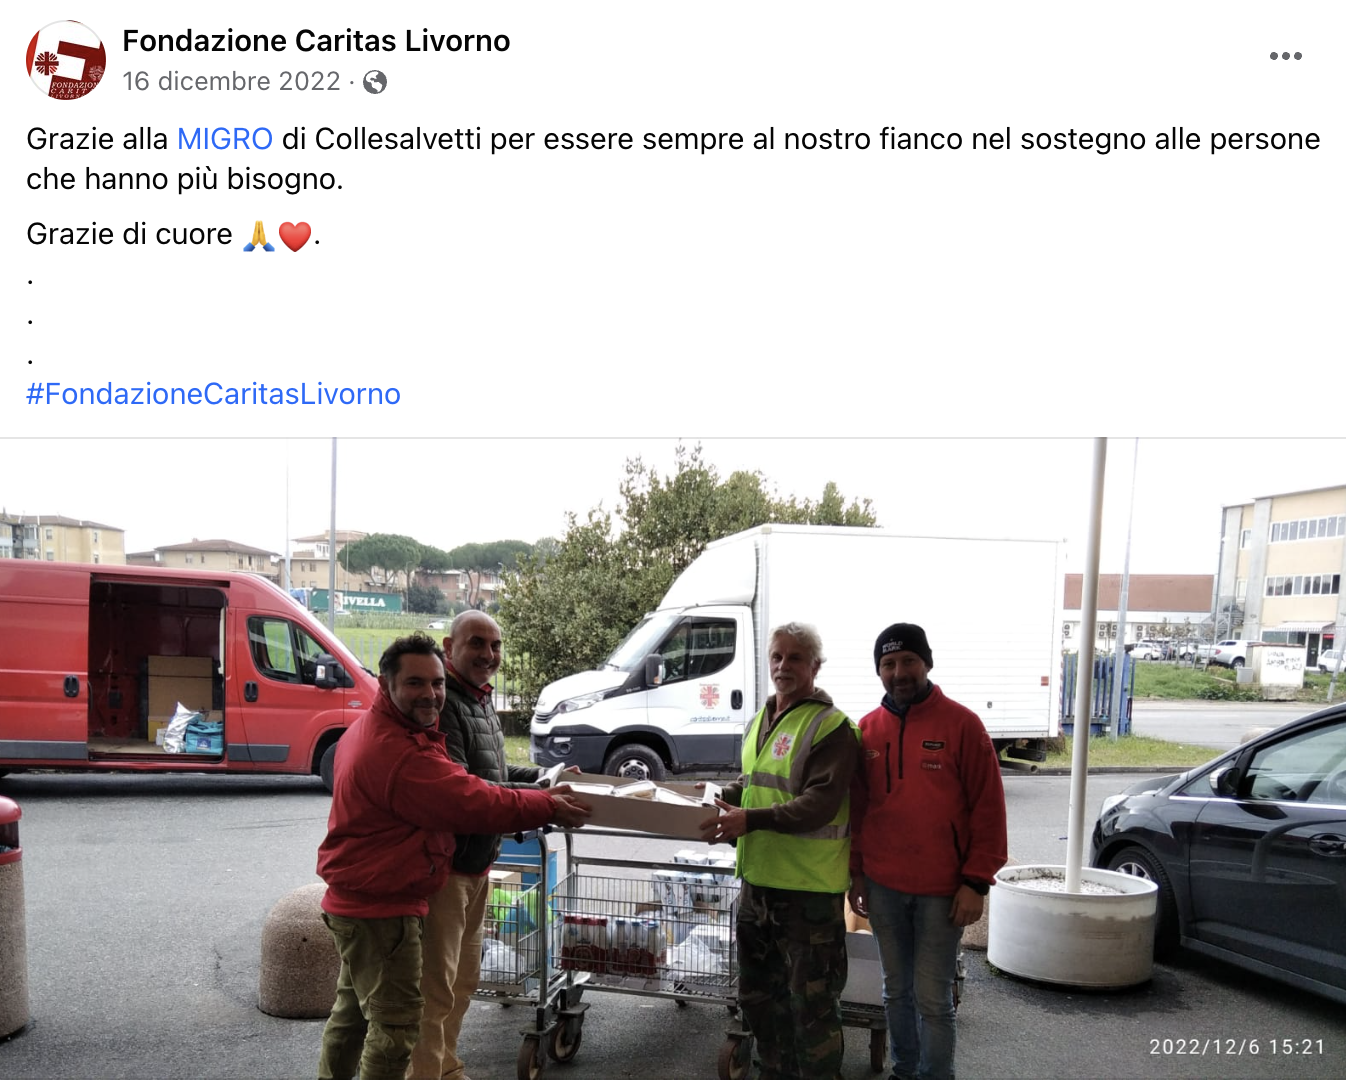 Grazie MIGRO di Collesalvetti: La Fondazione Caritas Livorno riconoscente per il prezioso sostegno